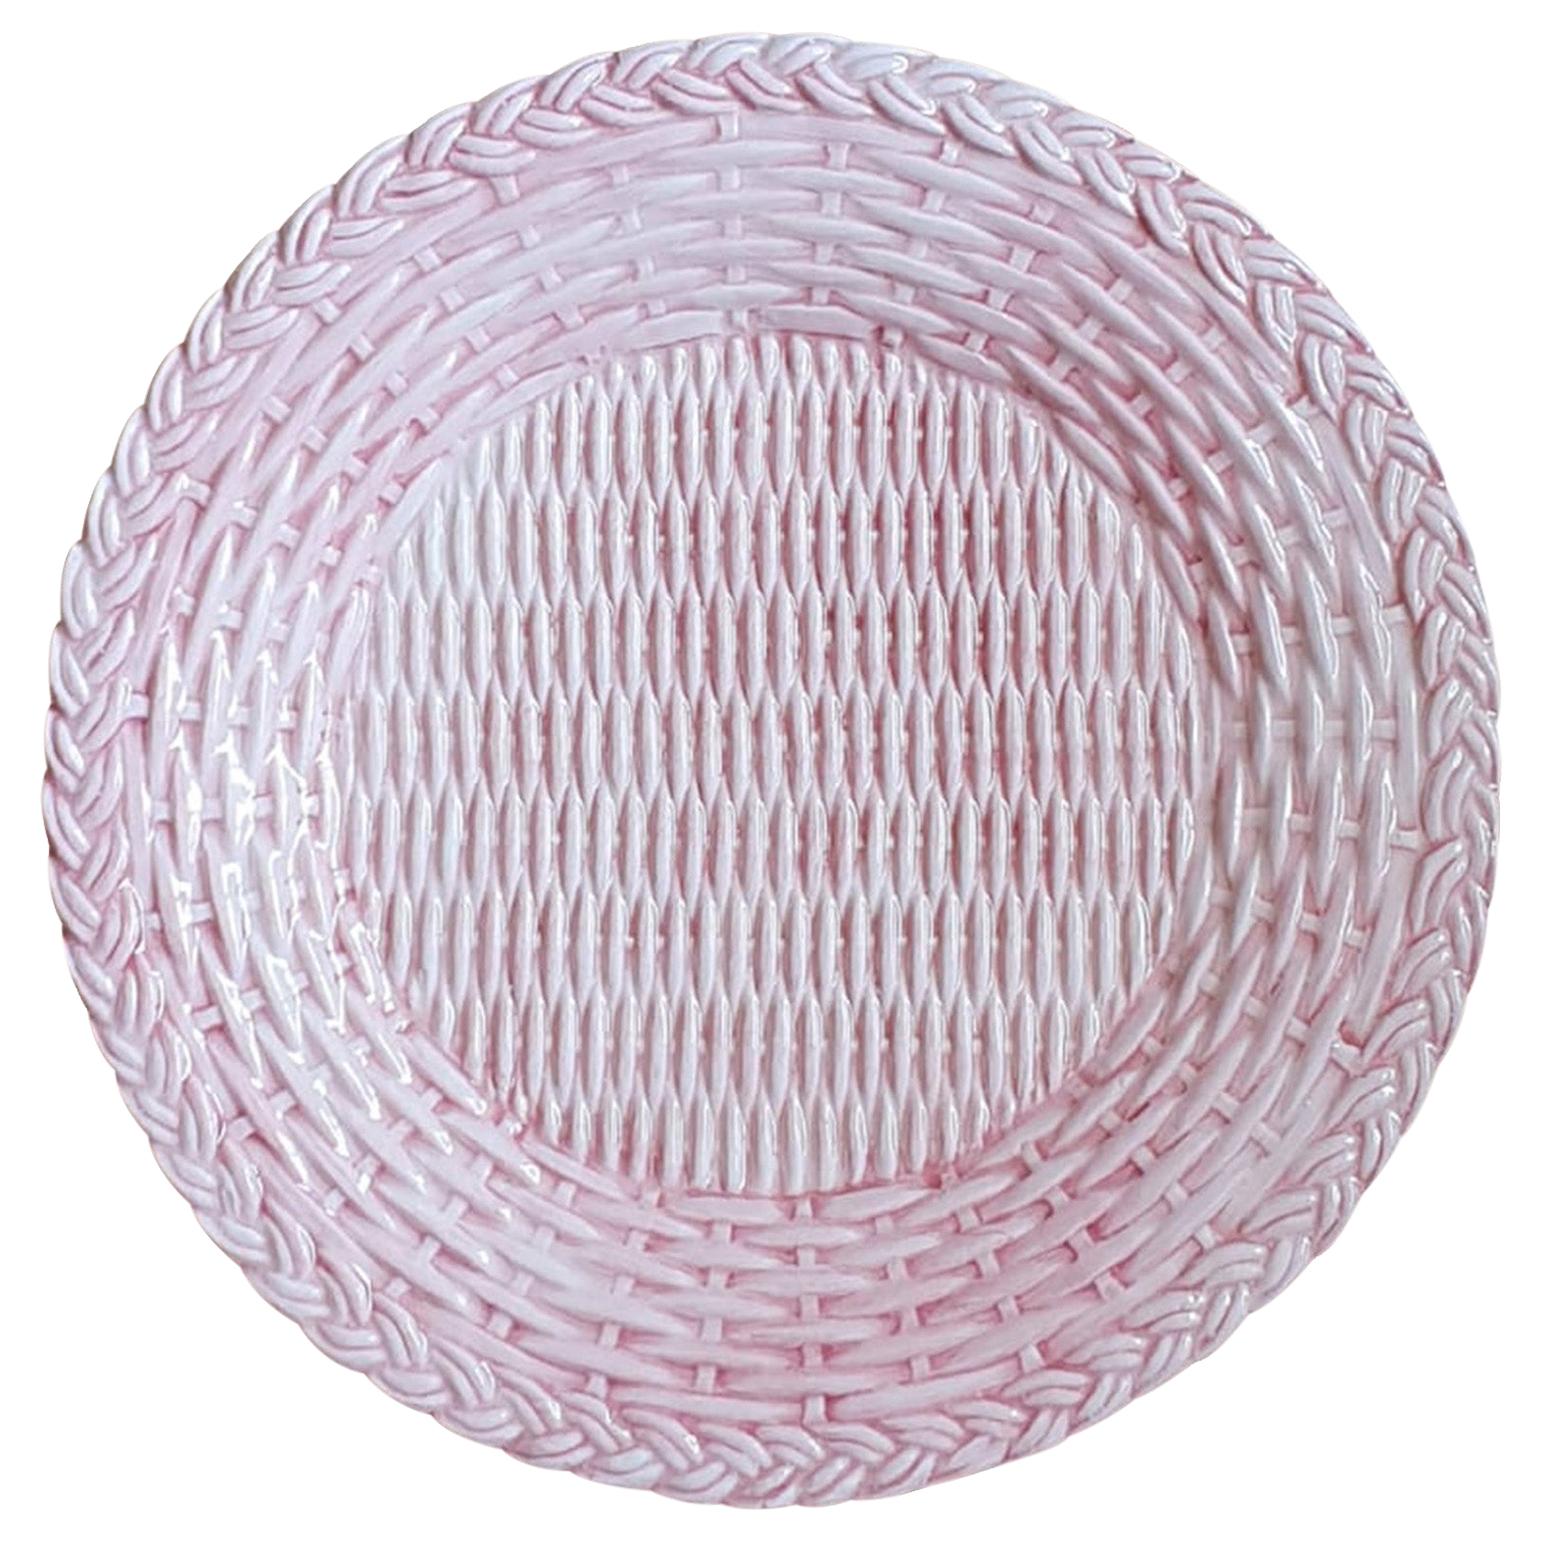 Ensemble de 4 assiettes plates en céramique rose osier fabriquées en Italie